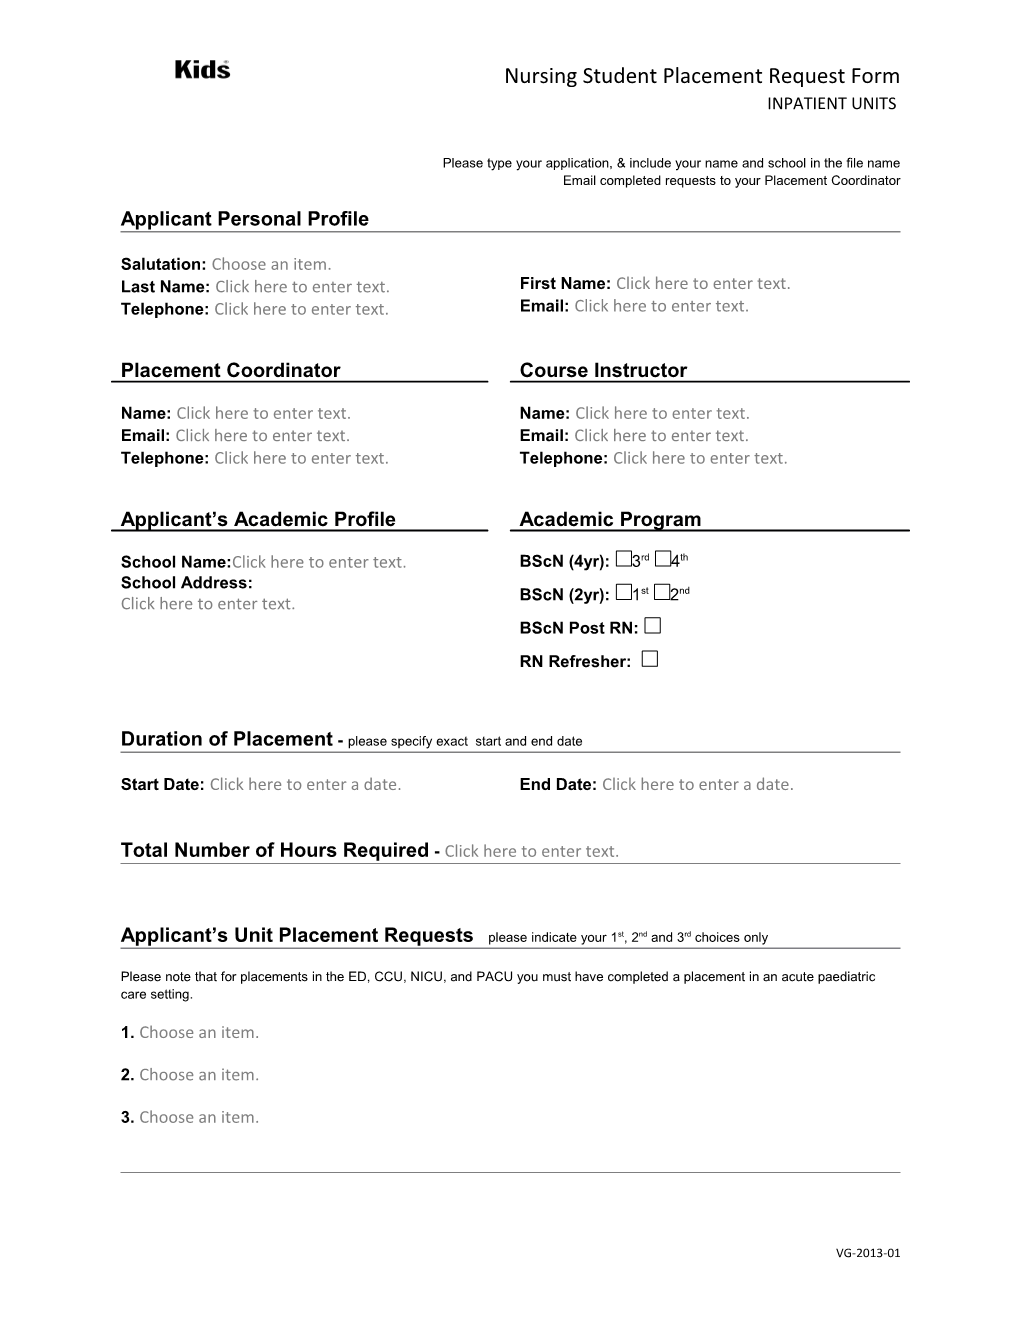 Applicant Personal Profile